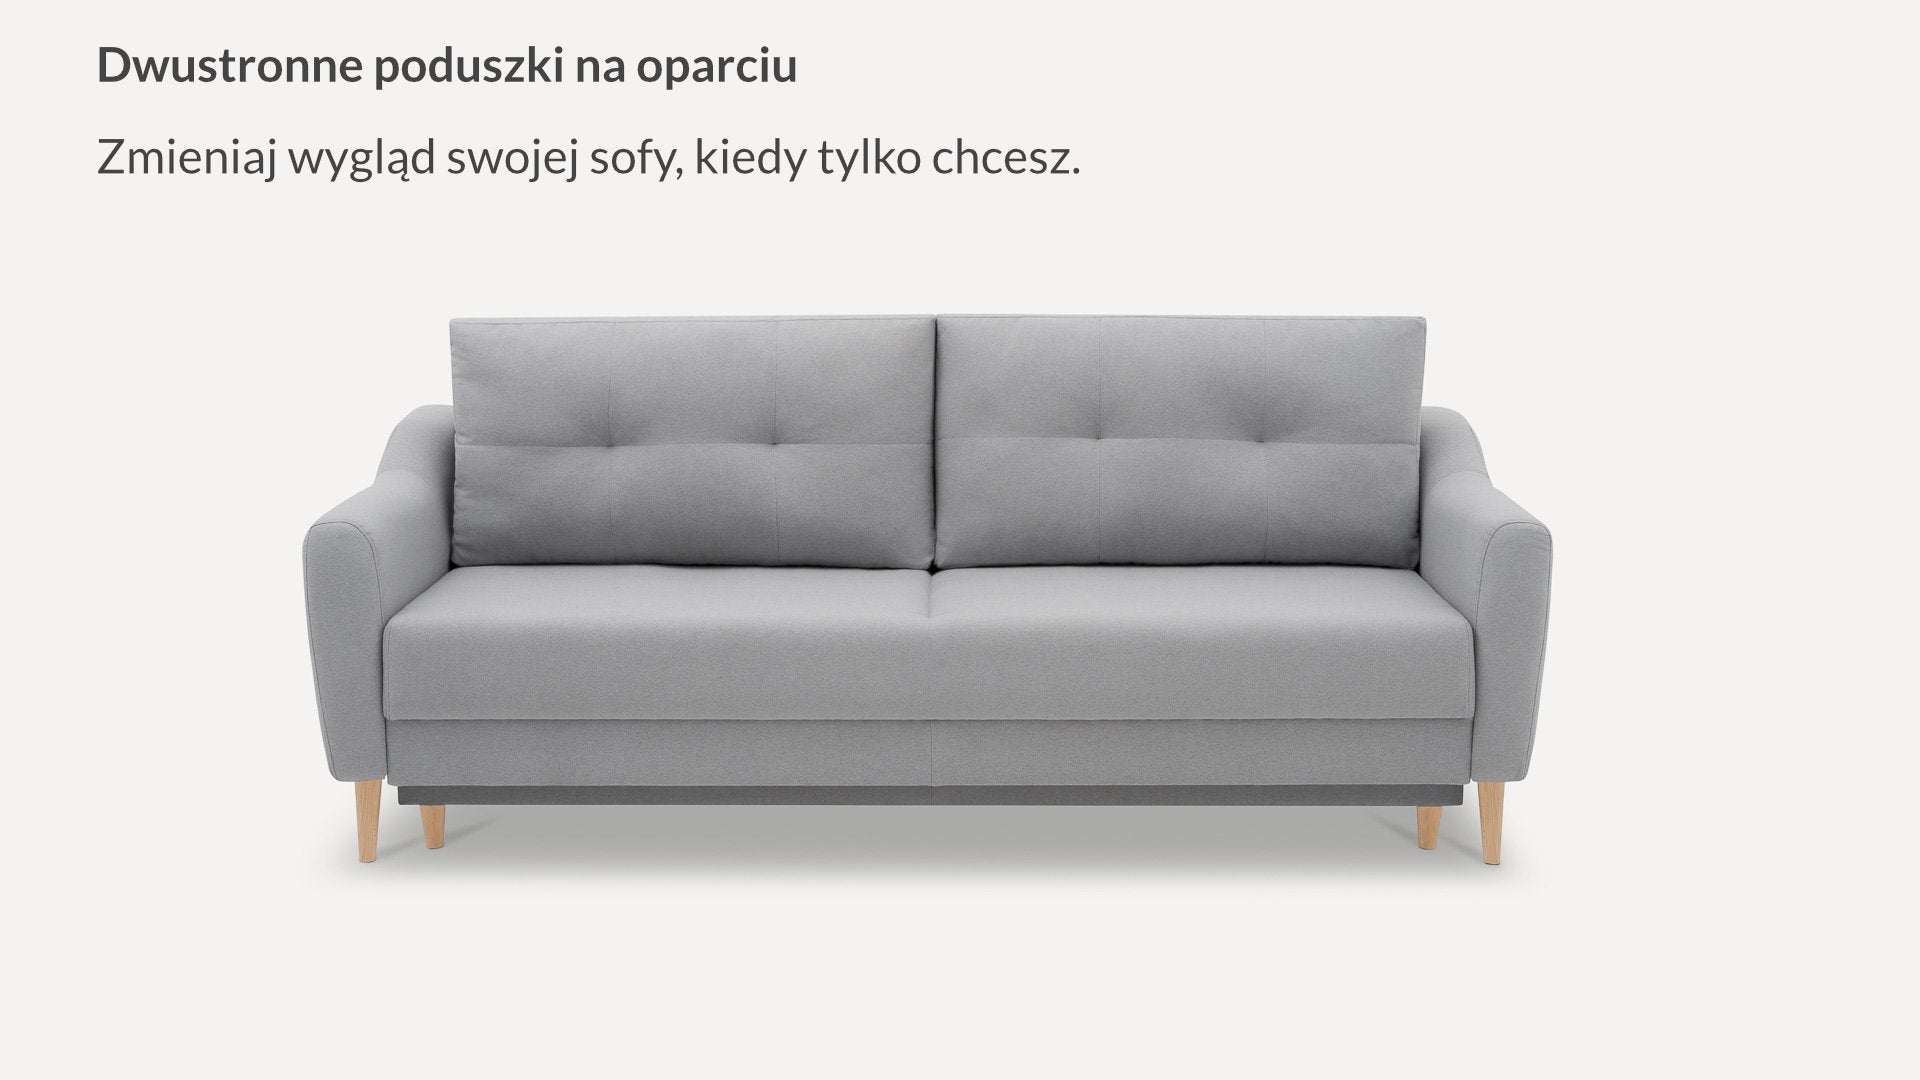 Sofa Benet DL Flausz - Benet